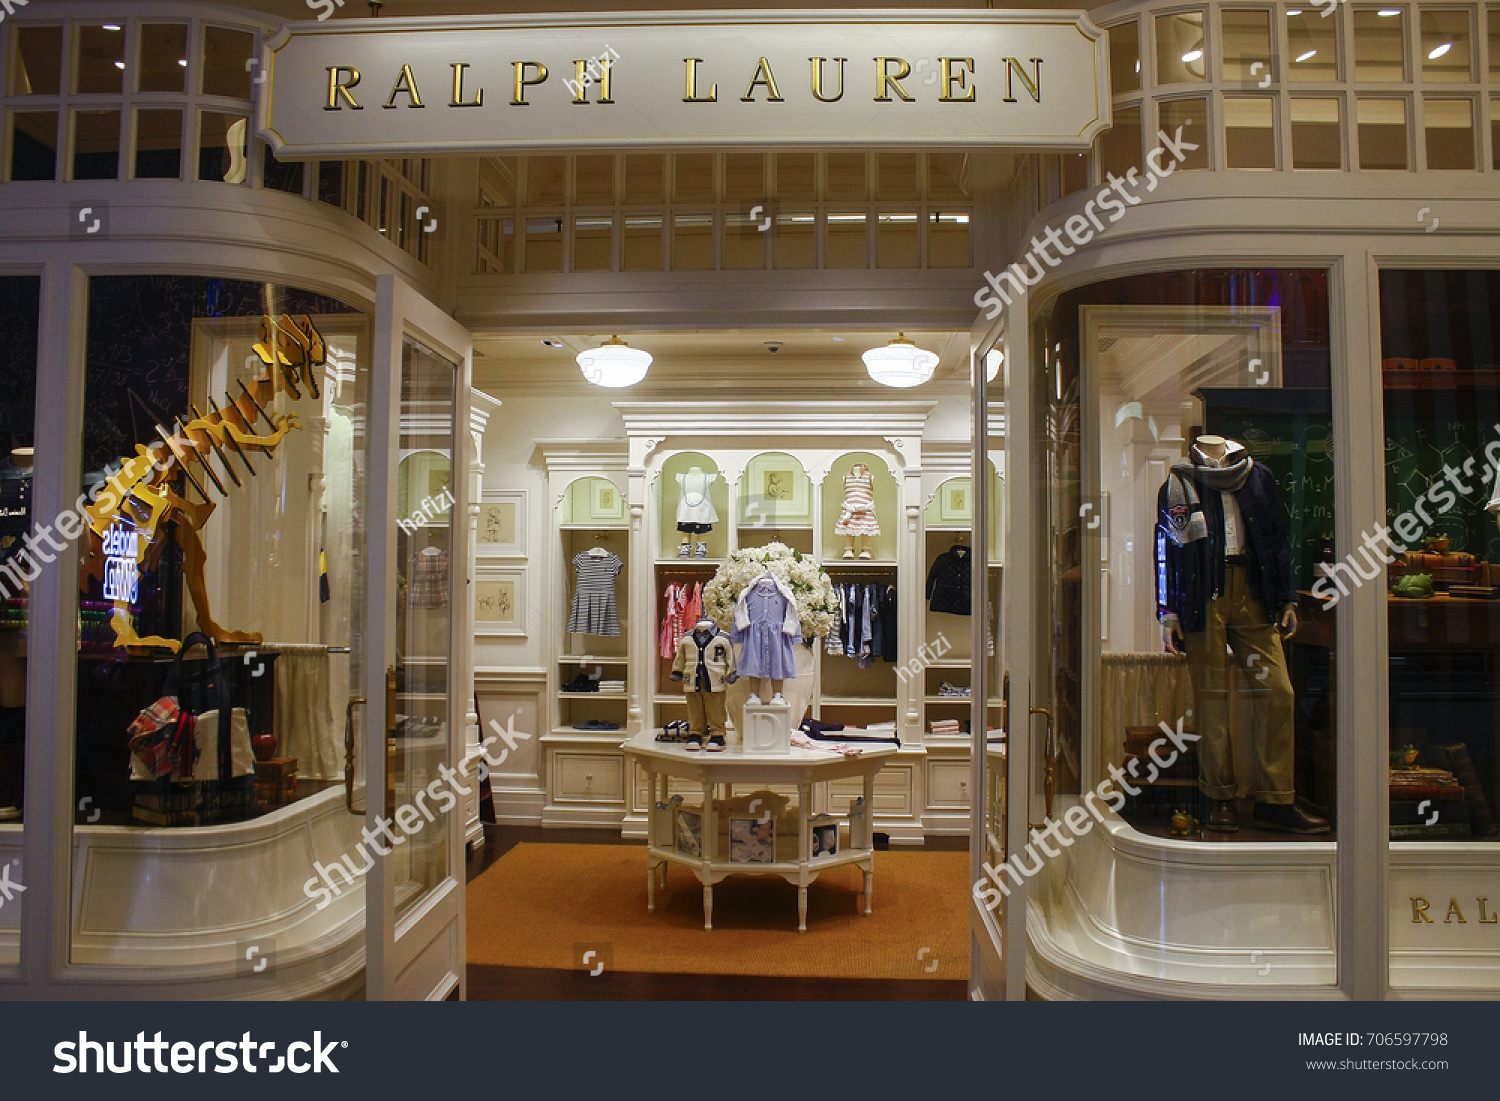 Polo Ralph Lauren Outlets Near Me - Prism Contractors ...